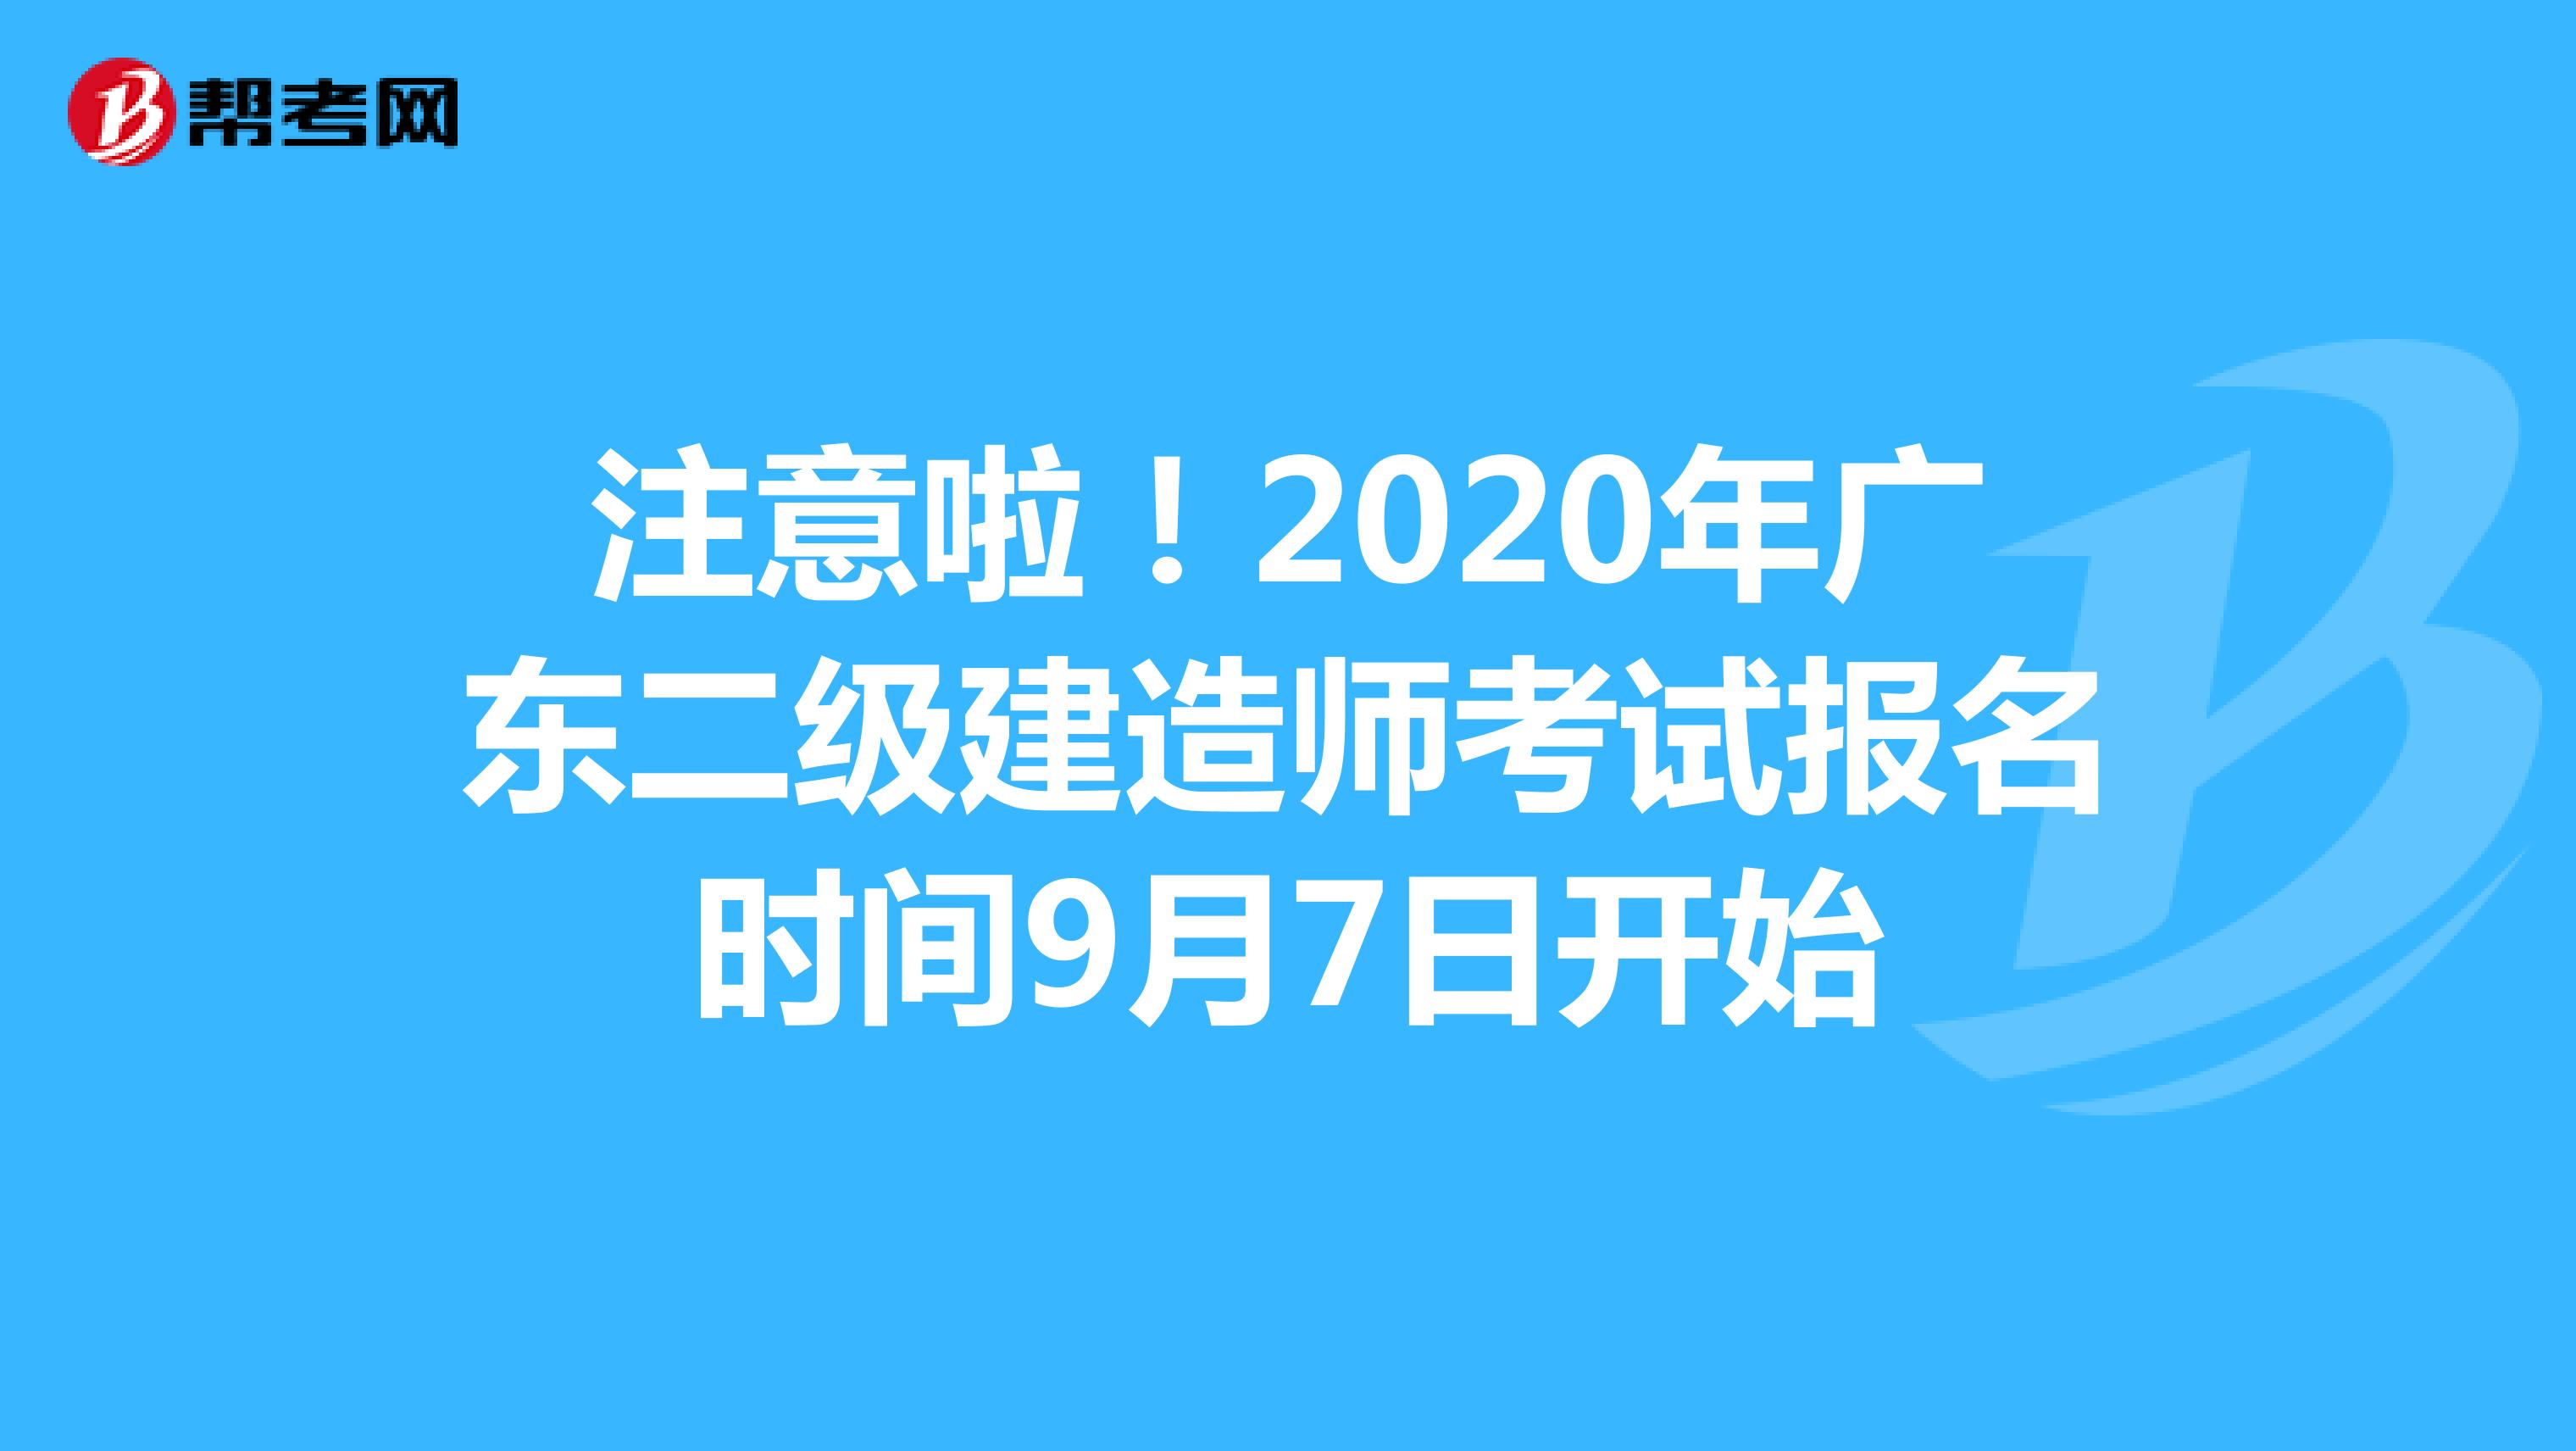 注意啦！2020年广东二级建造师考试报名时间9月7日开始